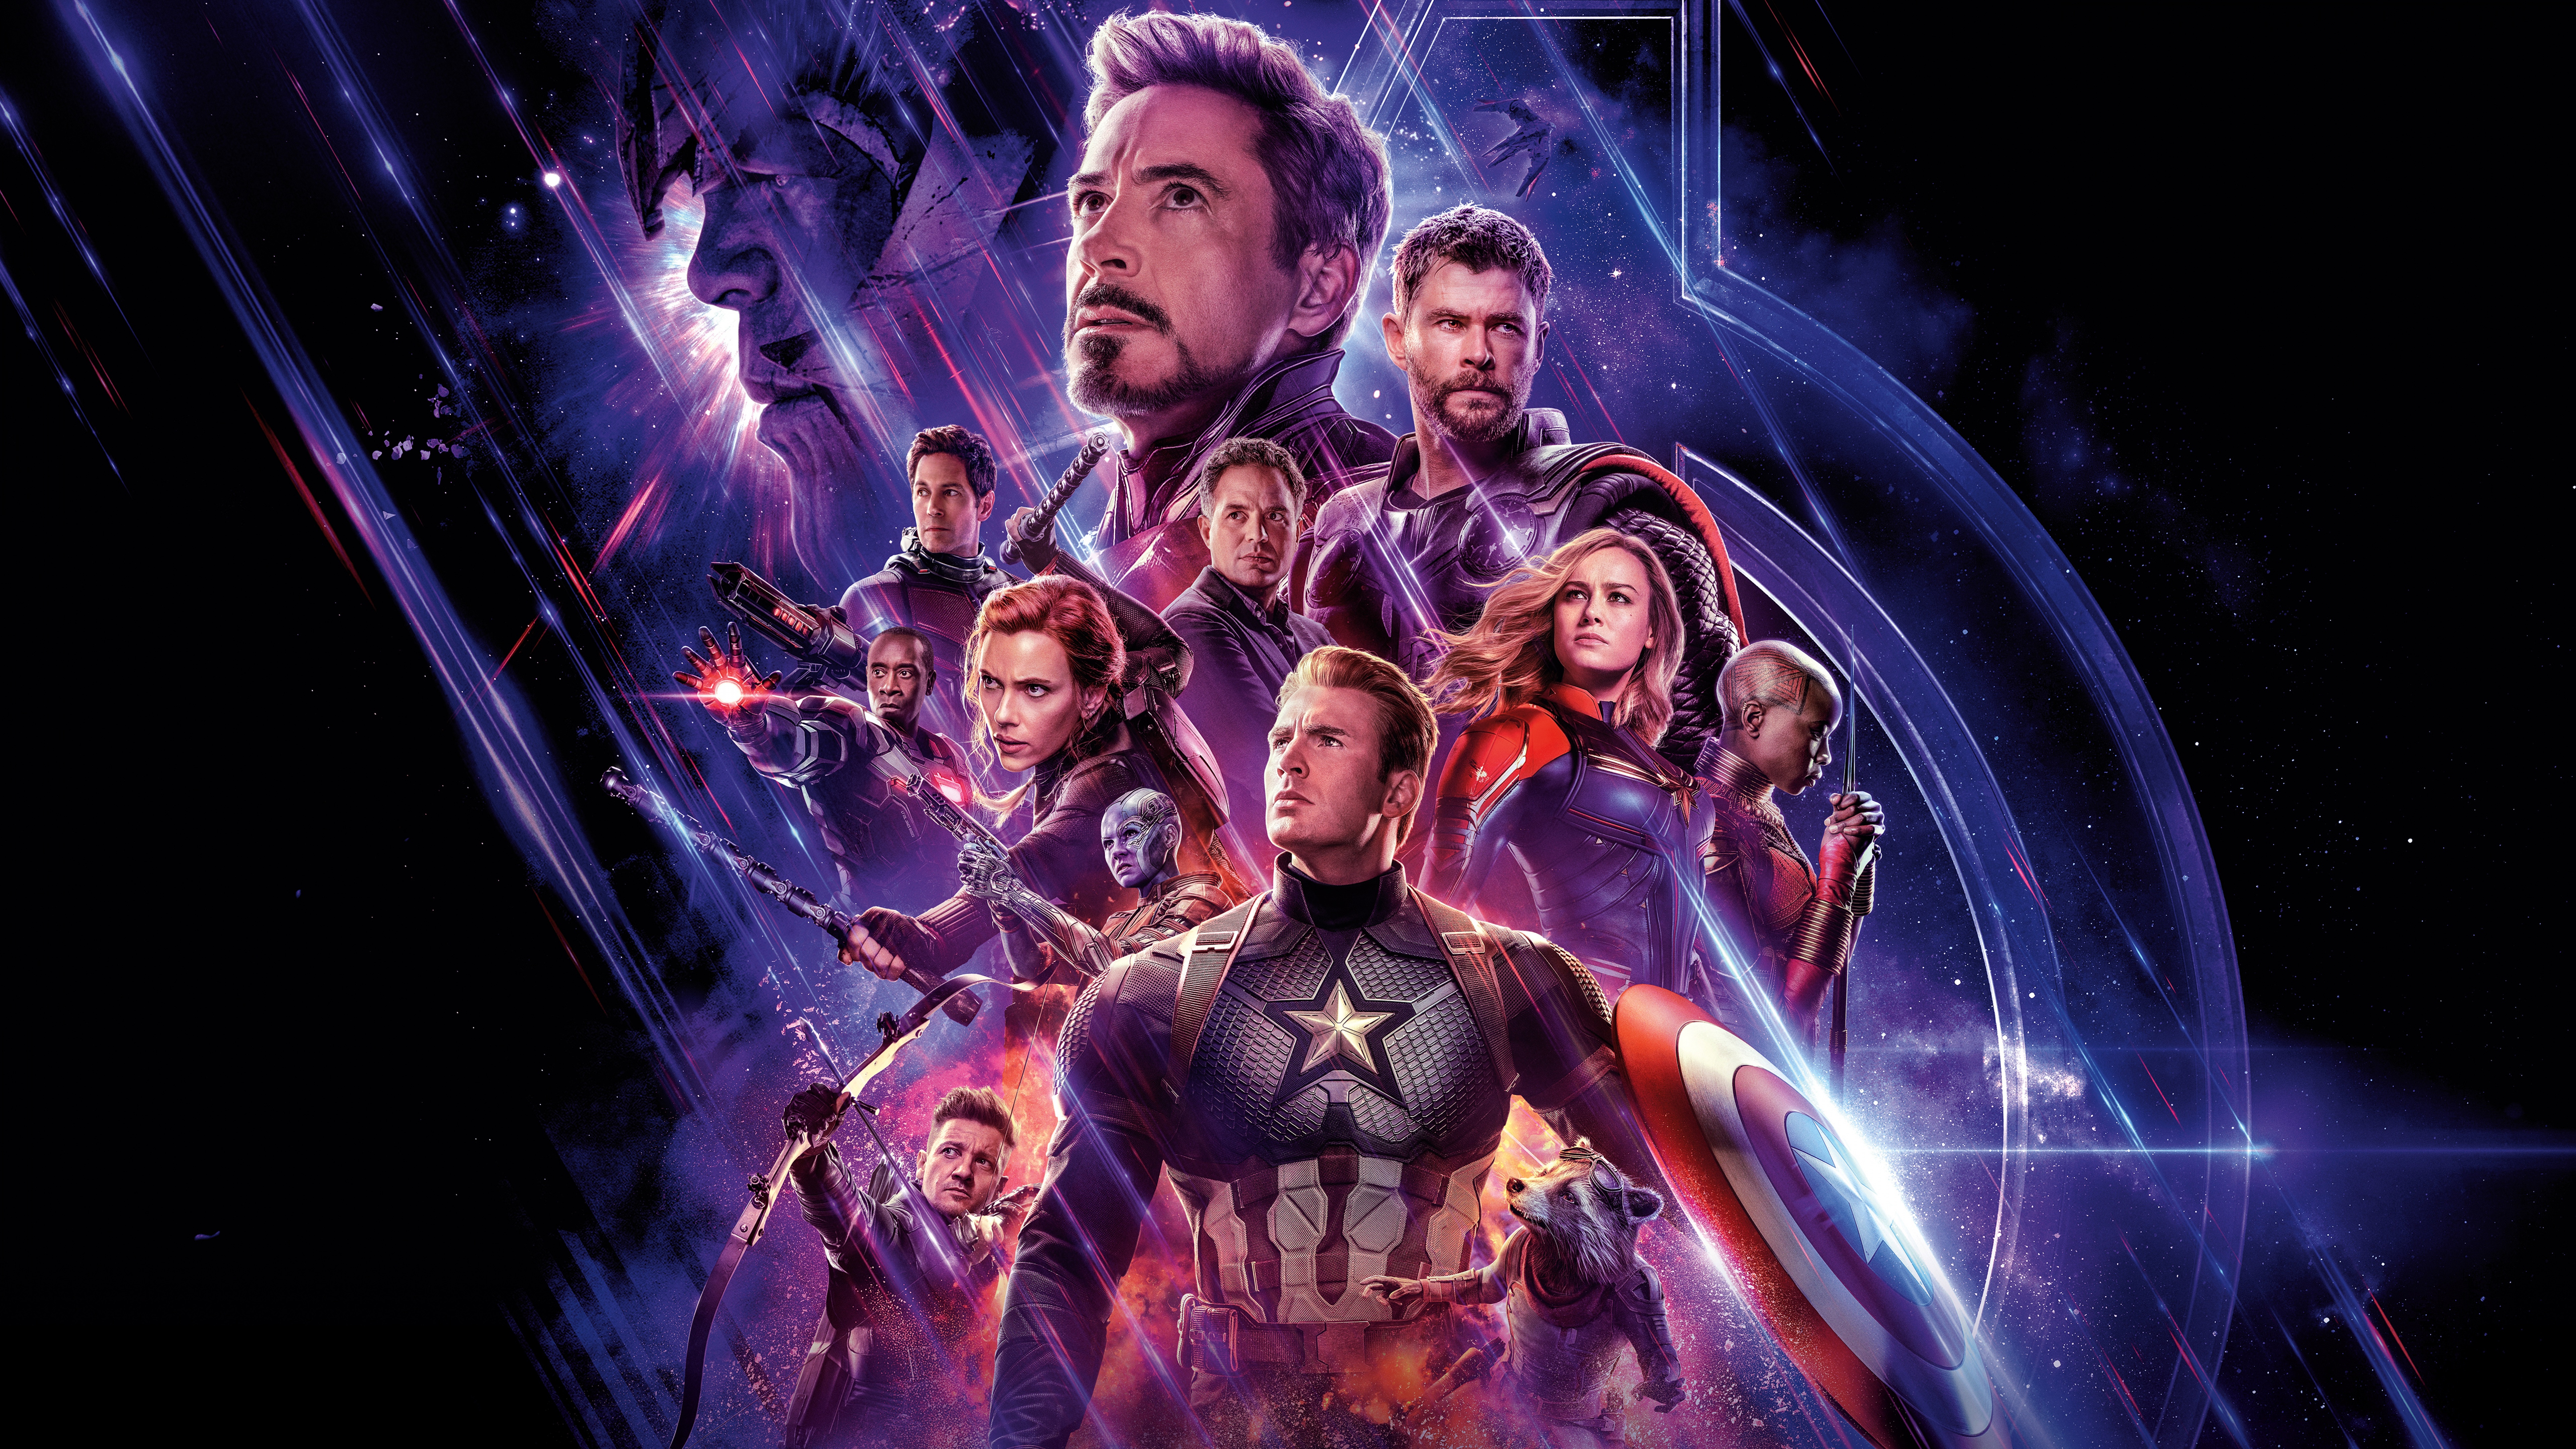 Avengers: Endgame là phim bom tấn của những siêu anh hùng mạnh mẽ nhất trong các vũ trụ khác nhau. Hãy cùng xem hình nền Avengers: Endgame Wallpaper để ngắm nhìn siêu anh hùng đang chiến đấu chống lại kẻ thù và bảo vệ thế giới.